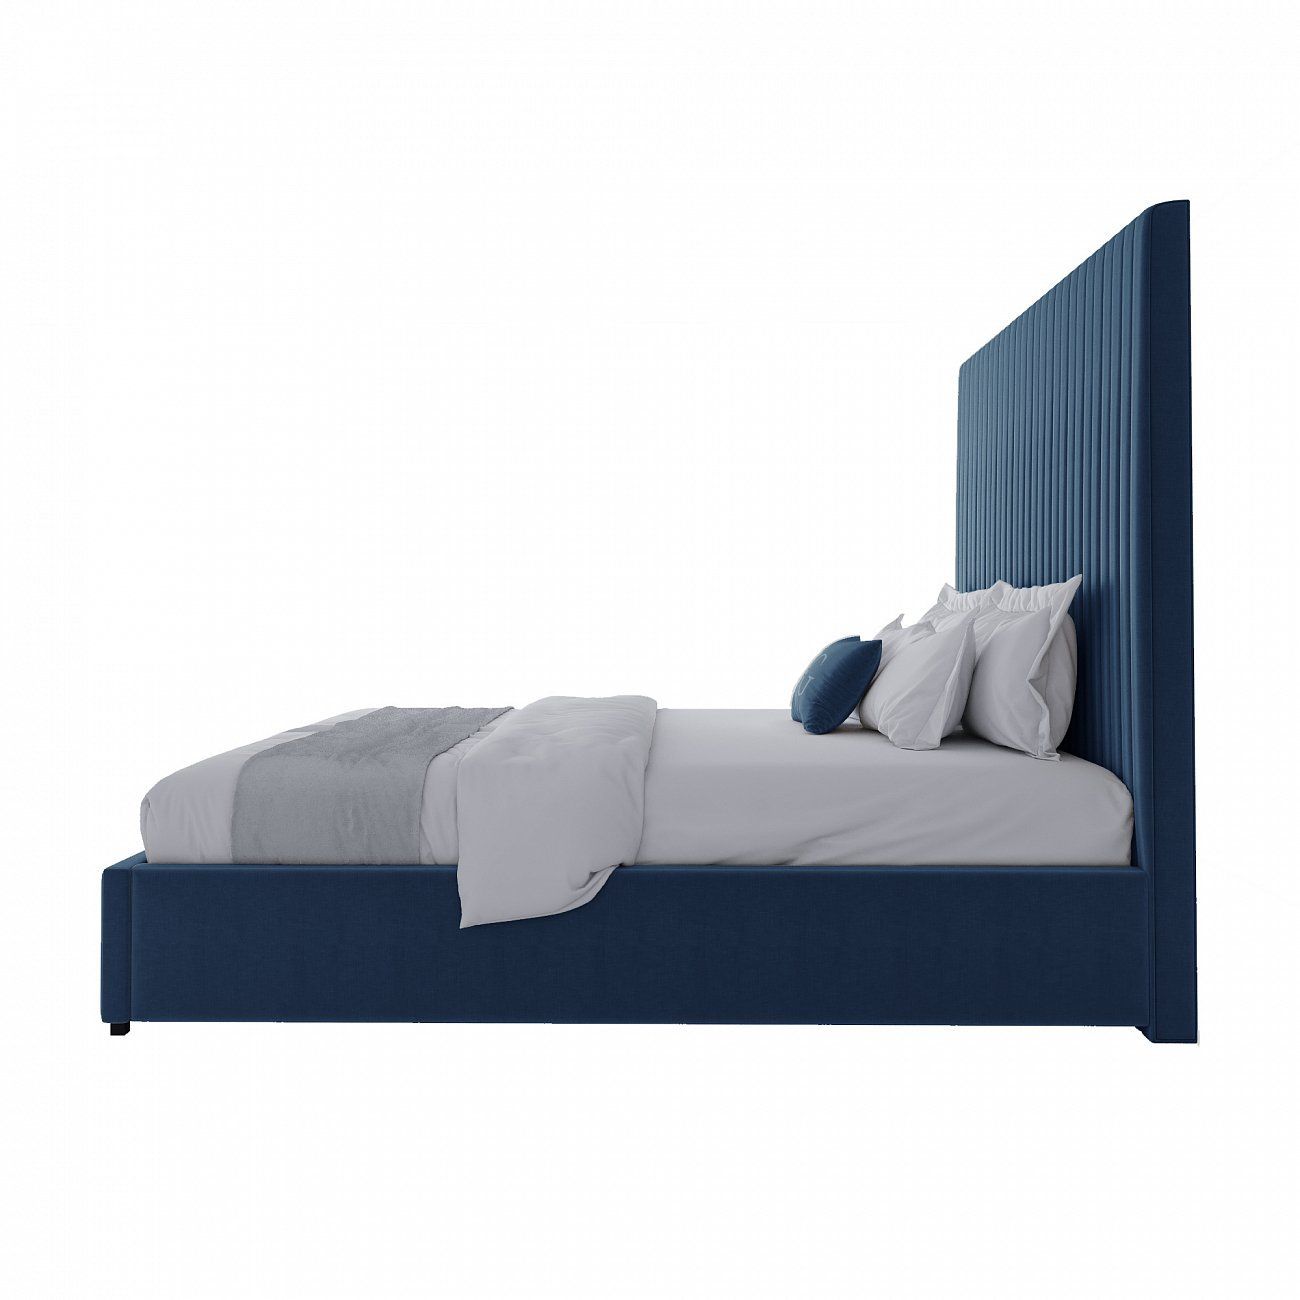 Кровать двуспальная 180х200 см синяя Mora